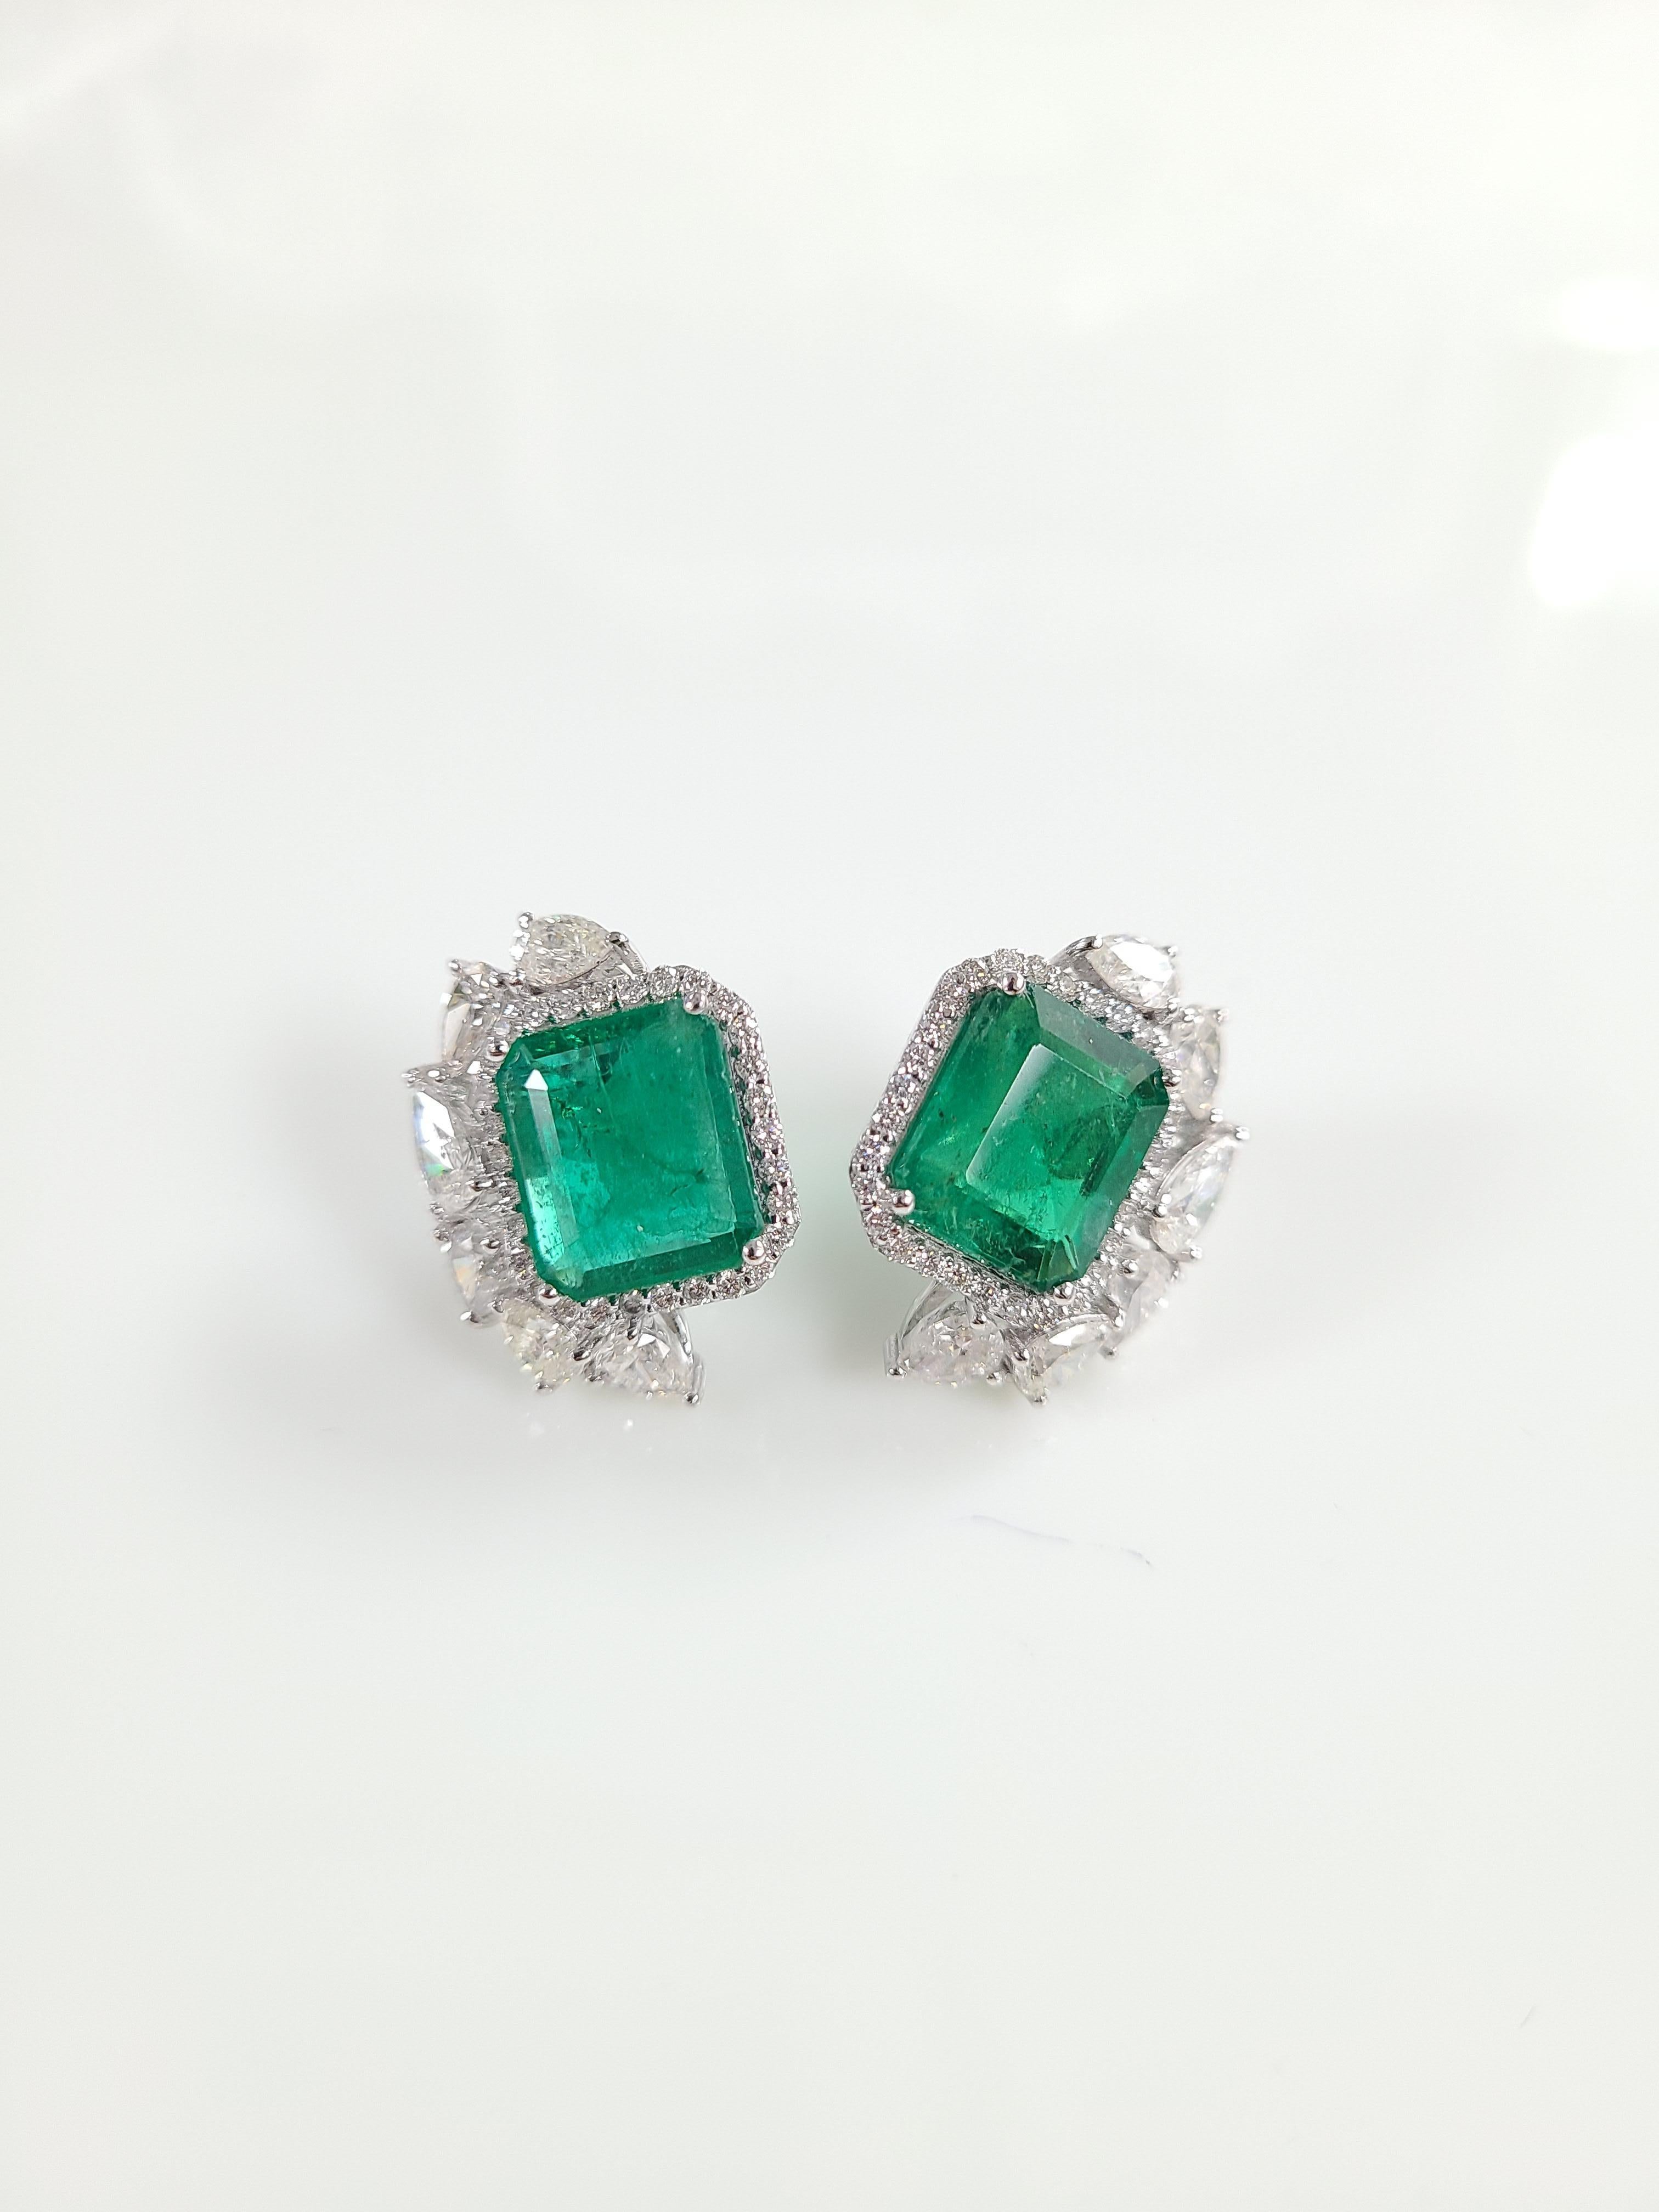 18 Karat White Gold Natural Zambian Emeralds Studs with Diamonds 3